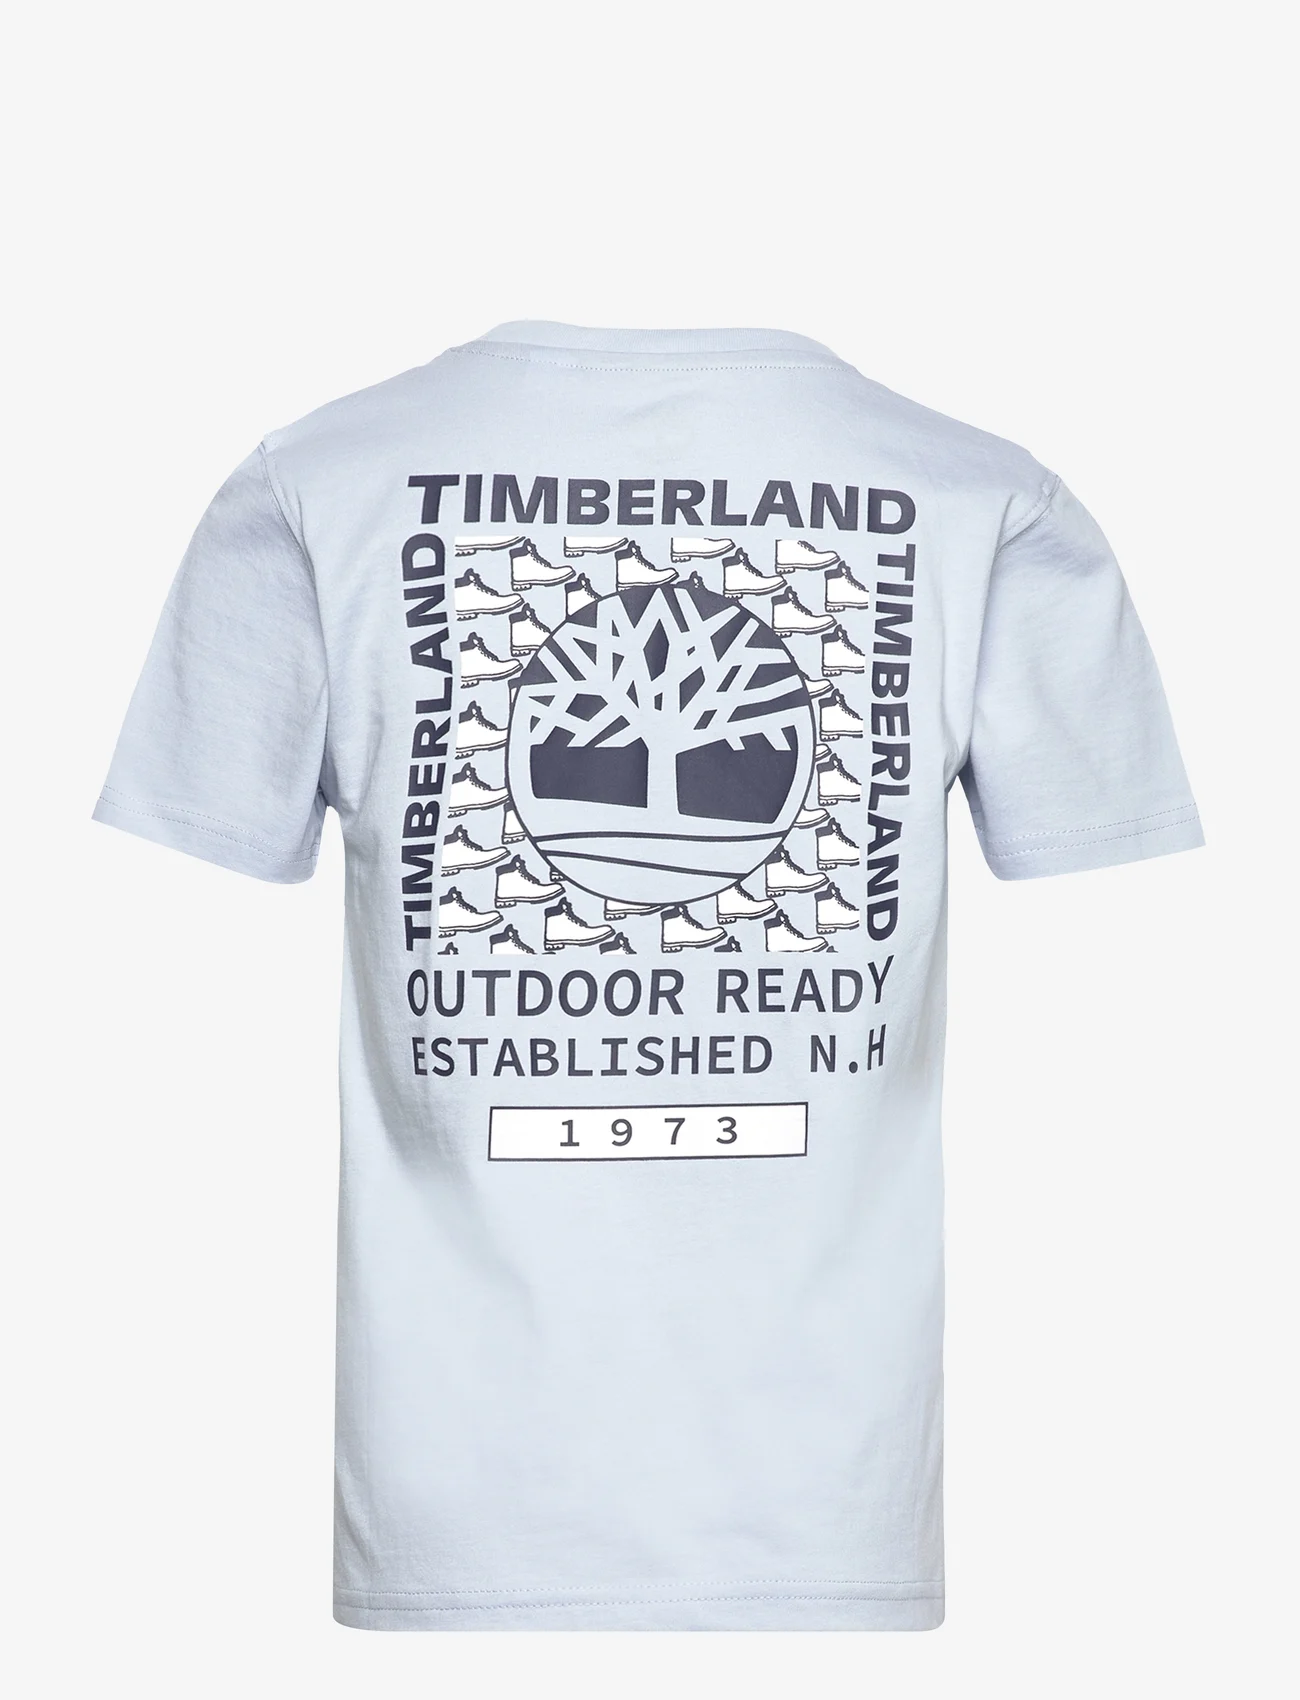 Timberland - SHORT SLEEVES TEE-SHIRT - korte mouwen - fjord - 1